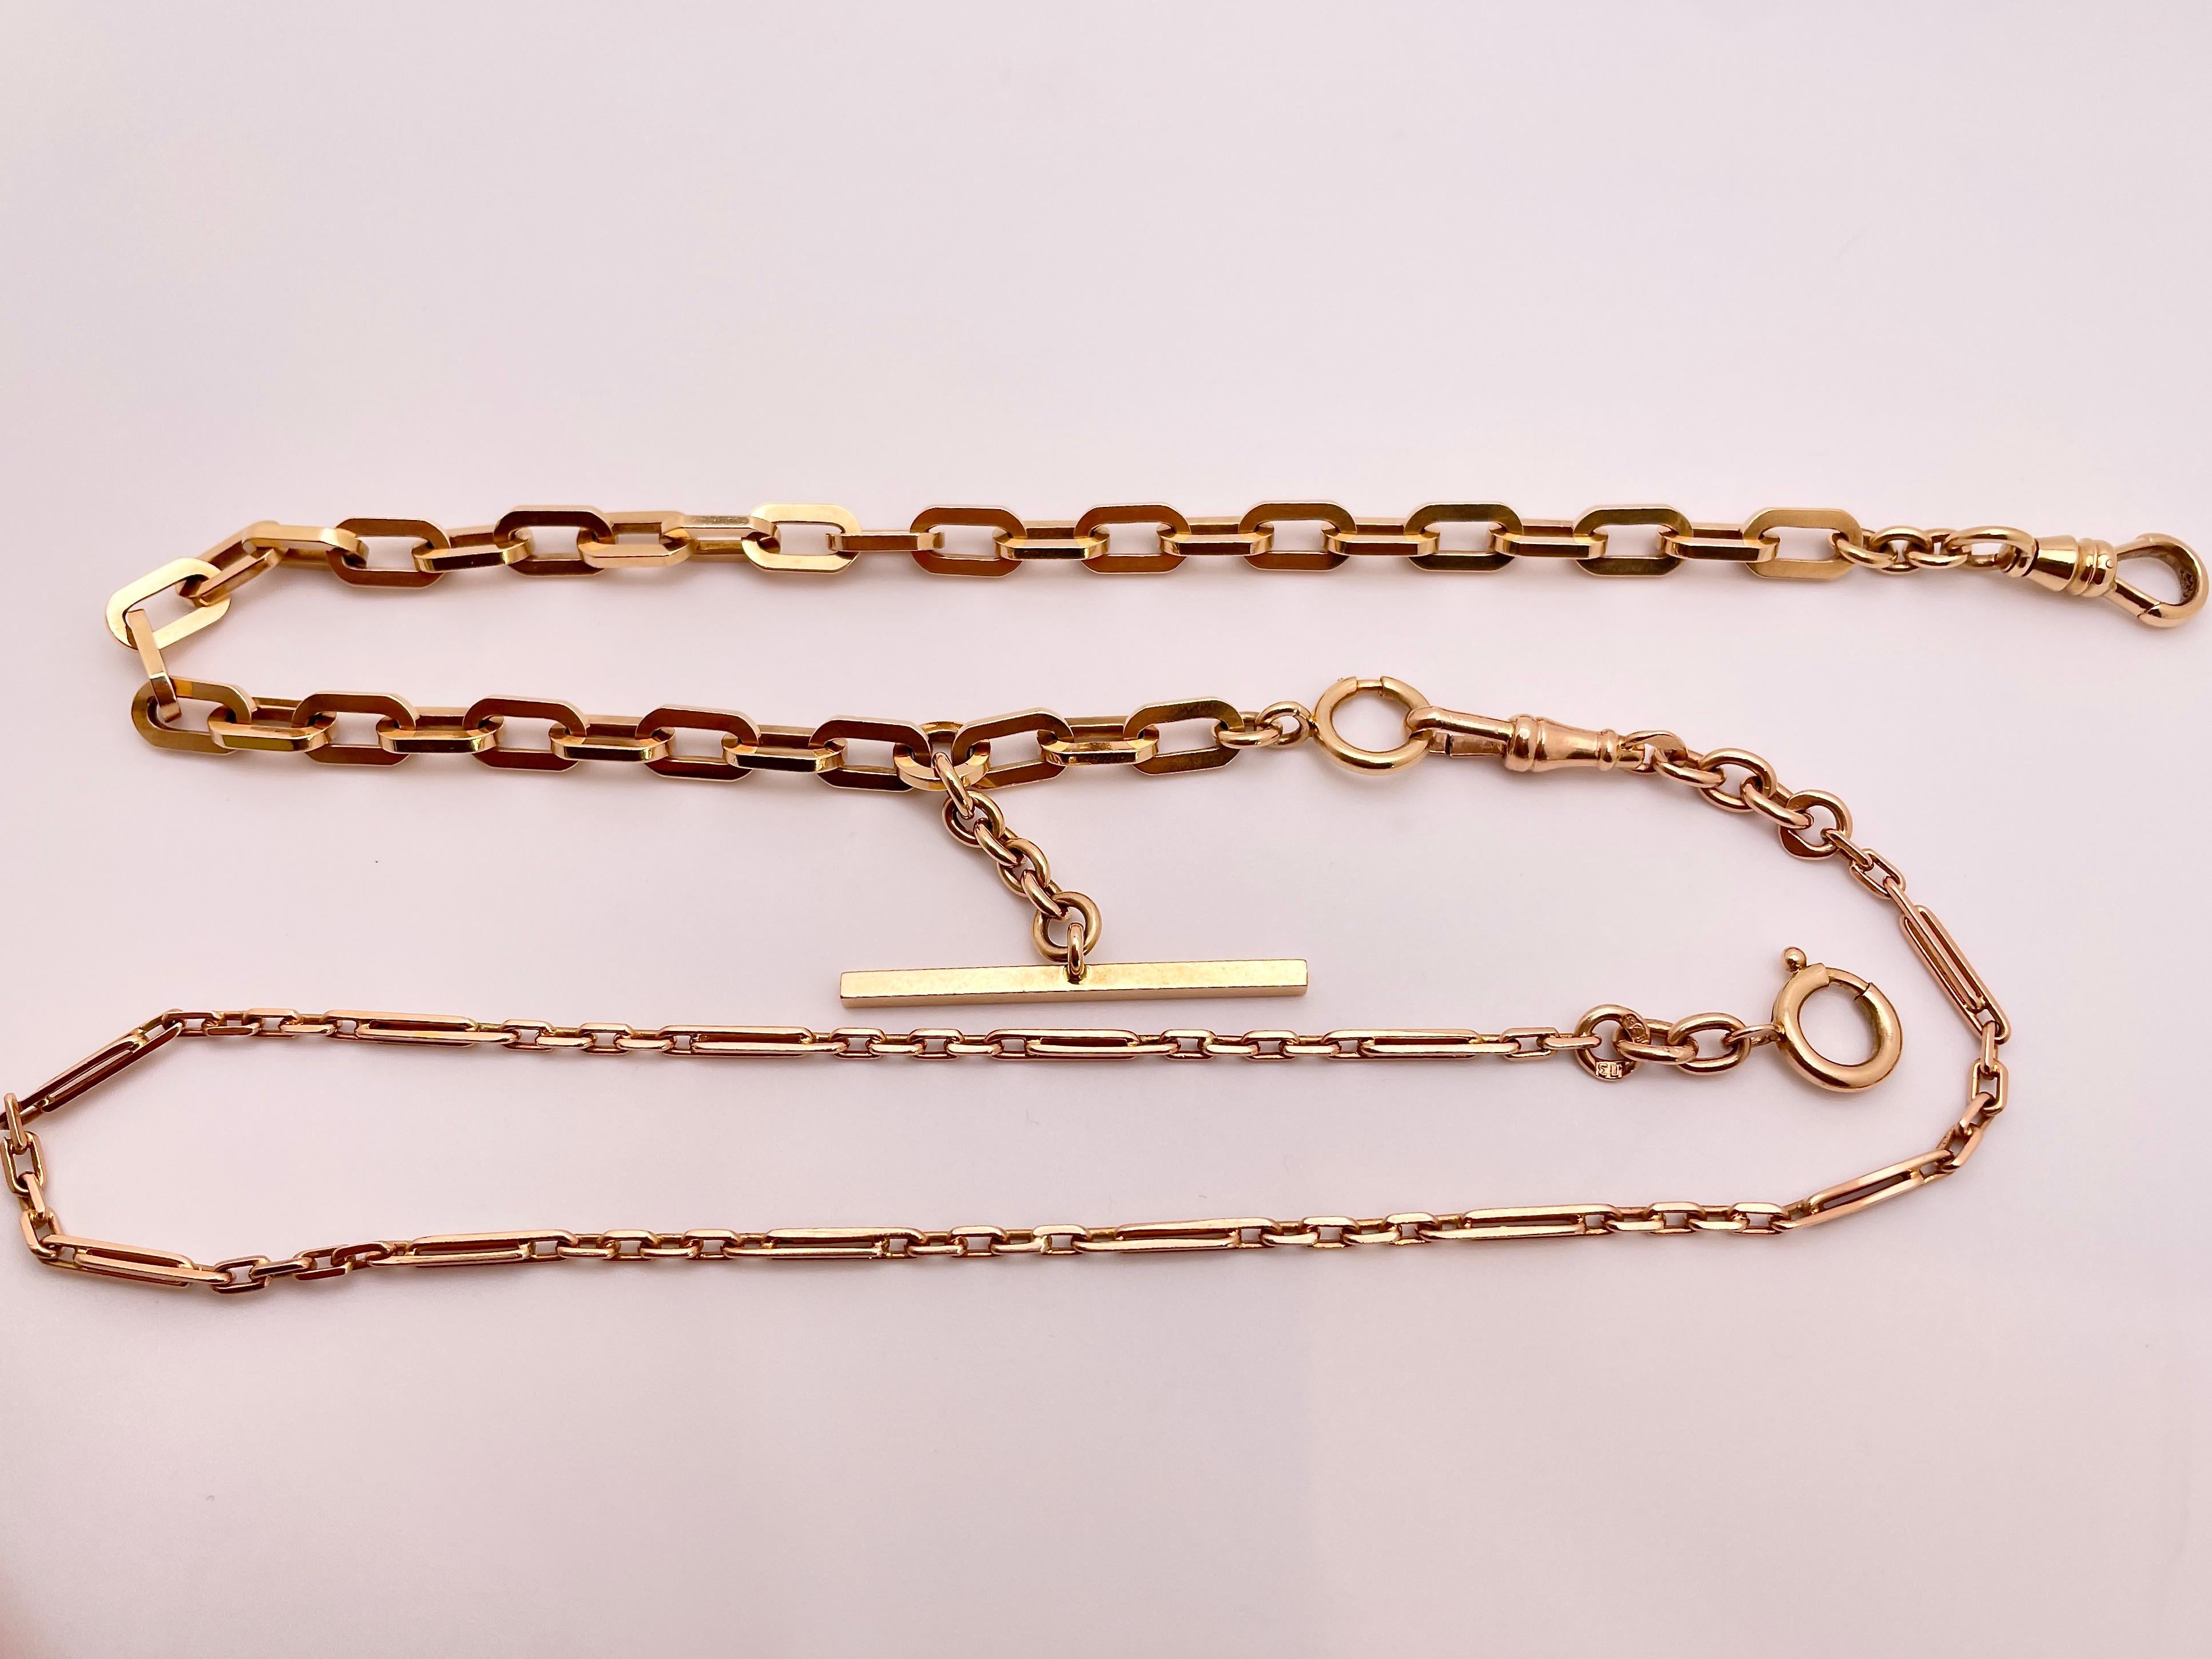 Eine antike abnehmbare Halskette aus 14 Karat Roségold. Eine Kombination aus zwei einzigartigen, dicken und dünnen, originalen Taschenuhrenketten aus Roségold der 1930er-40er Jahre. Dieses schöne Stück kann sowohl als eine lange Kette als auch